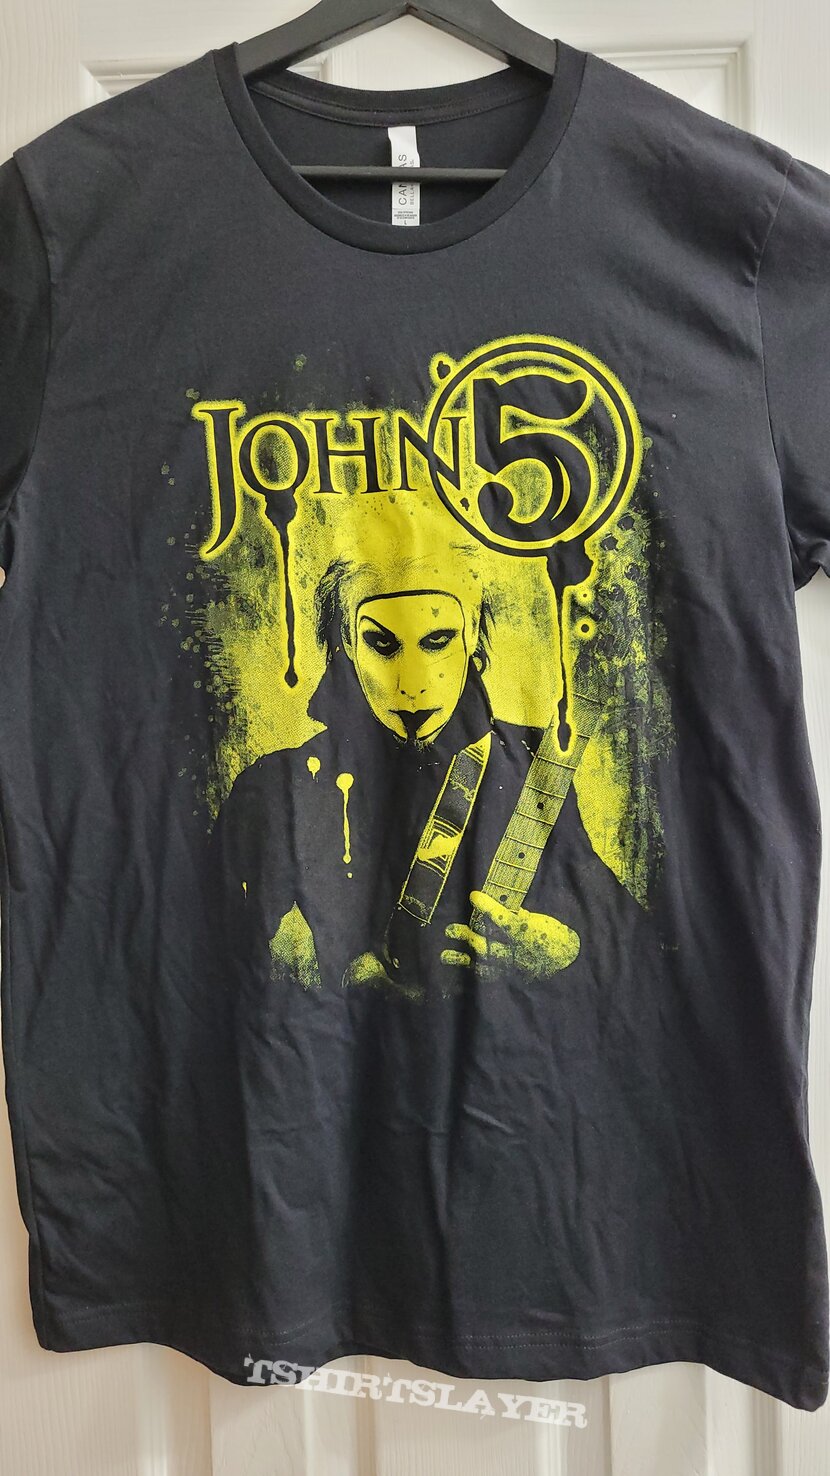 John 5 - U.S. 2021 Tour Shirt